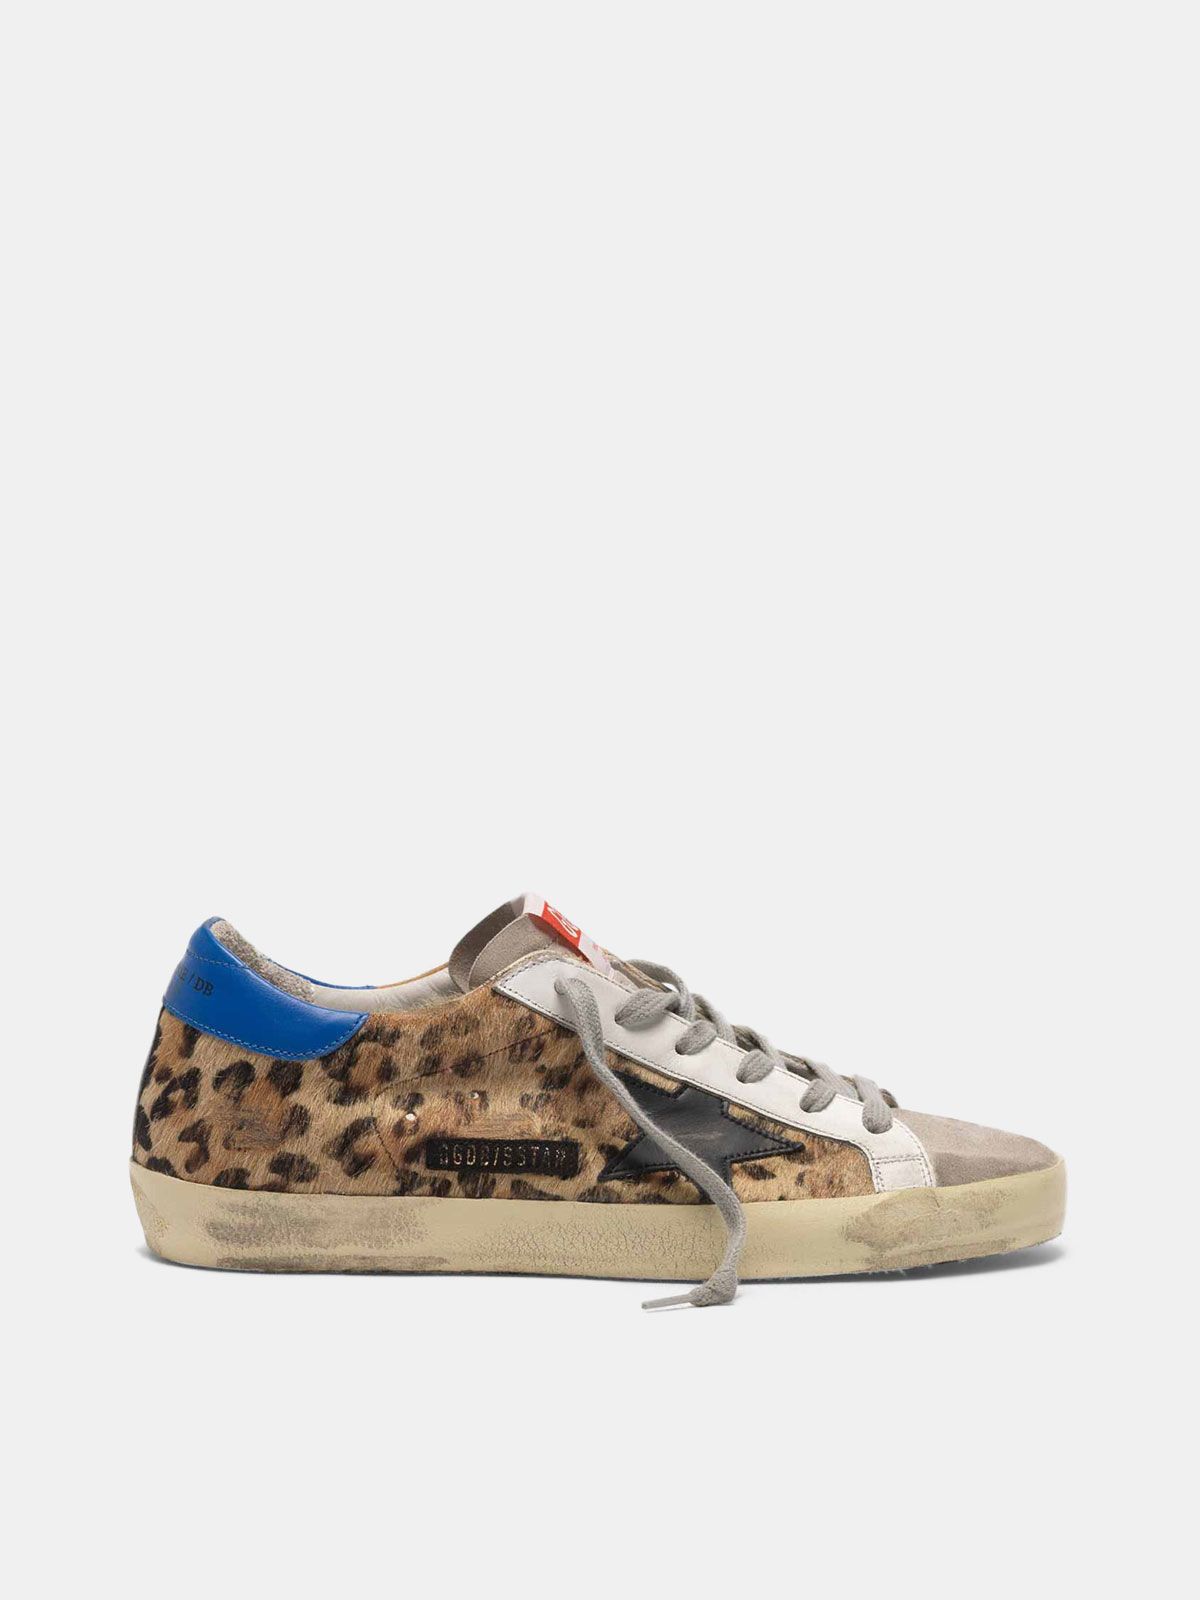 golden goose superstar leopard print sneakers